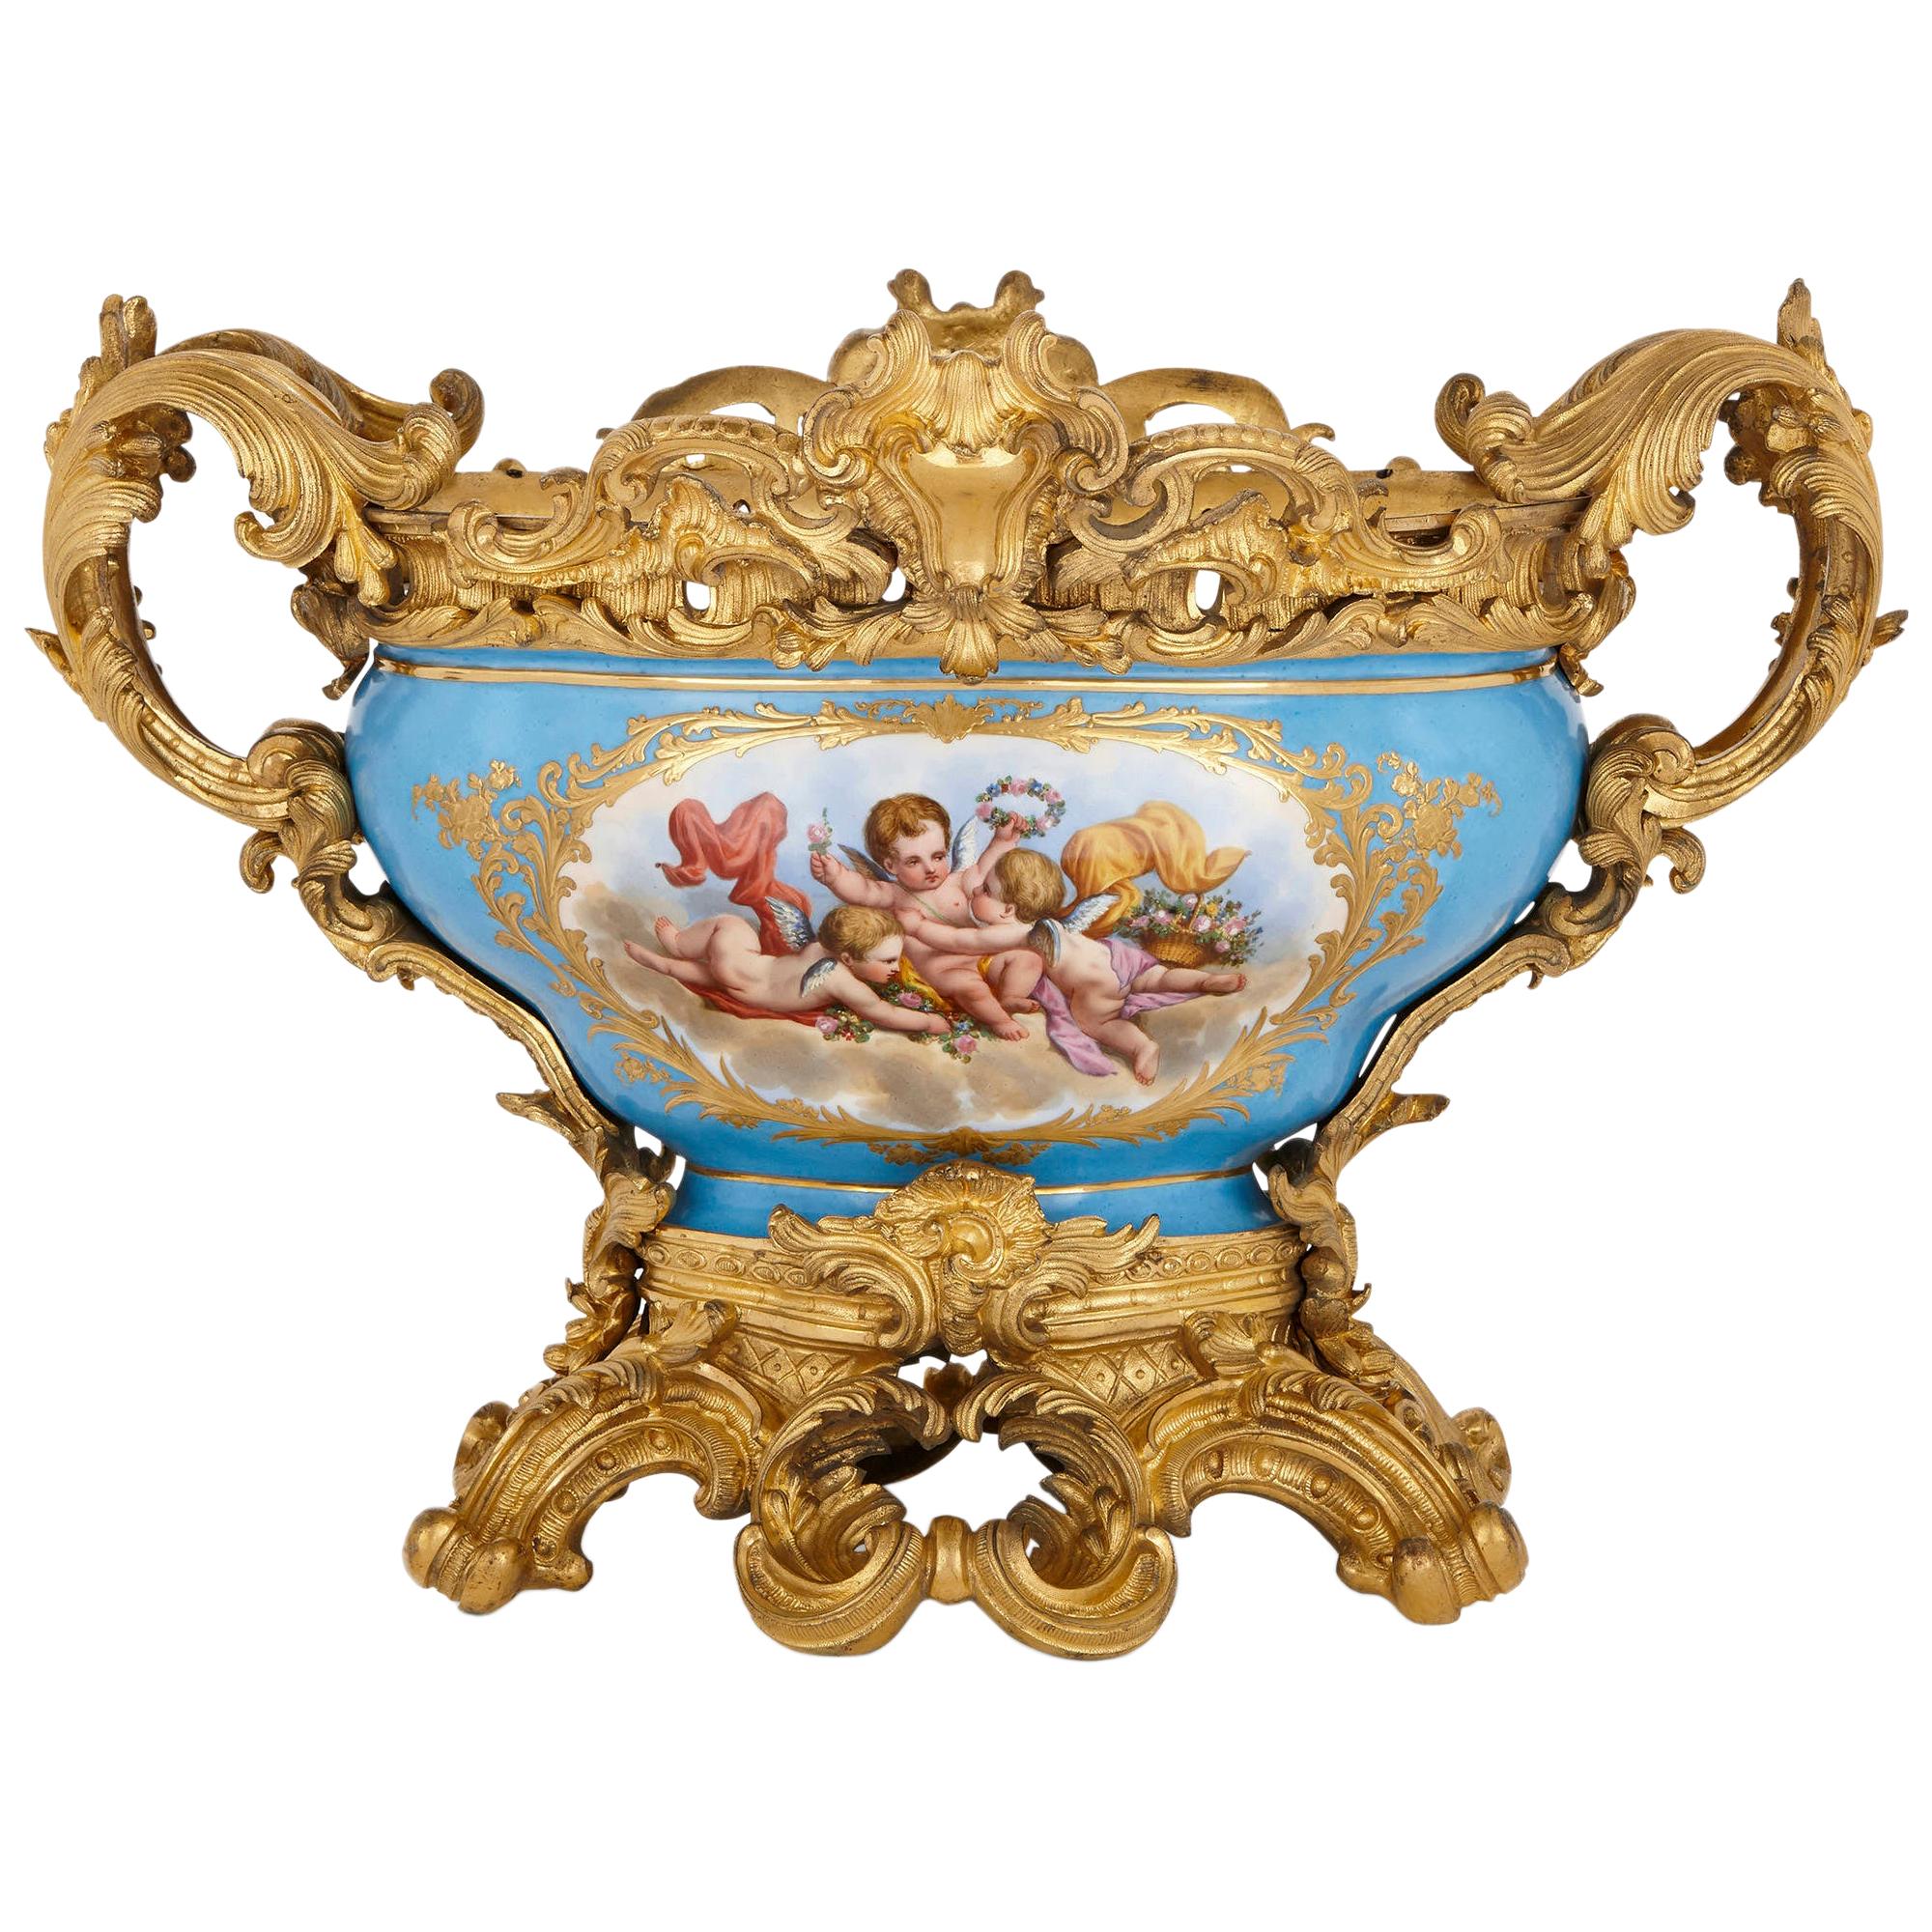 Sèvres Style Porcelain and Gilt Bronze Centrepiece Bowl